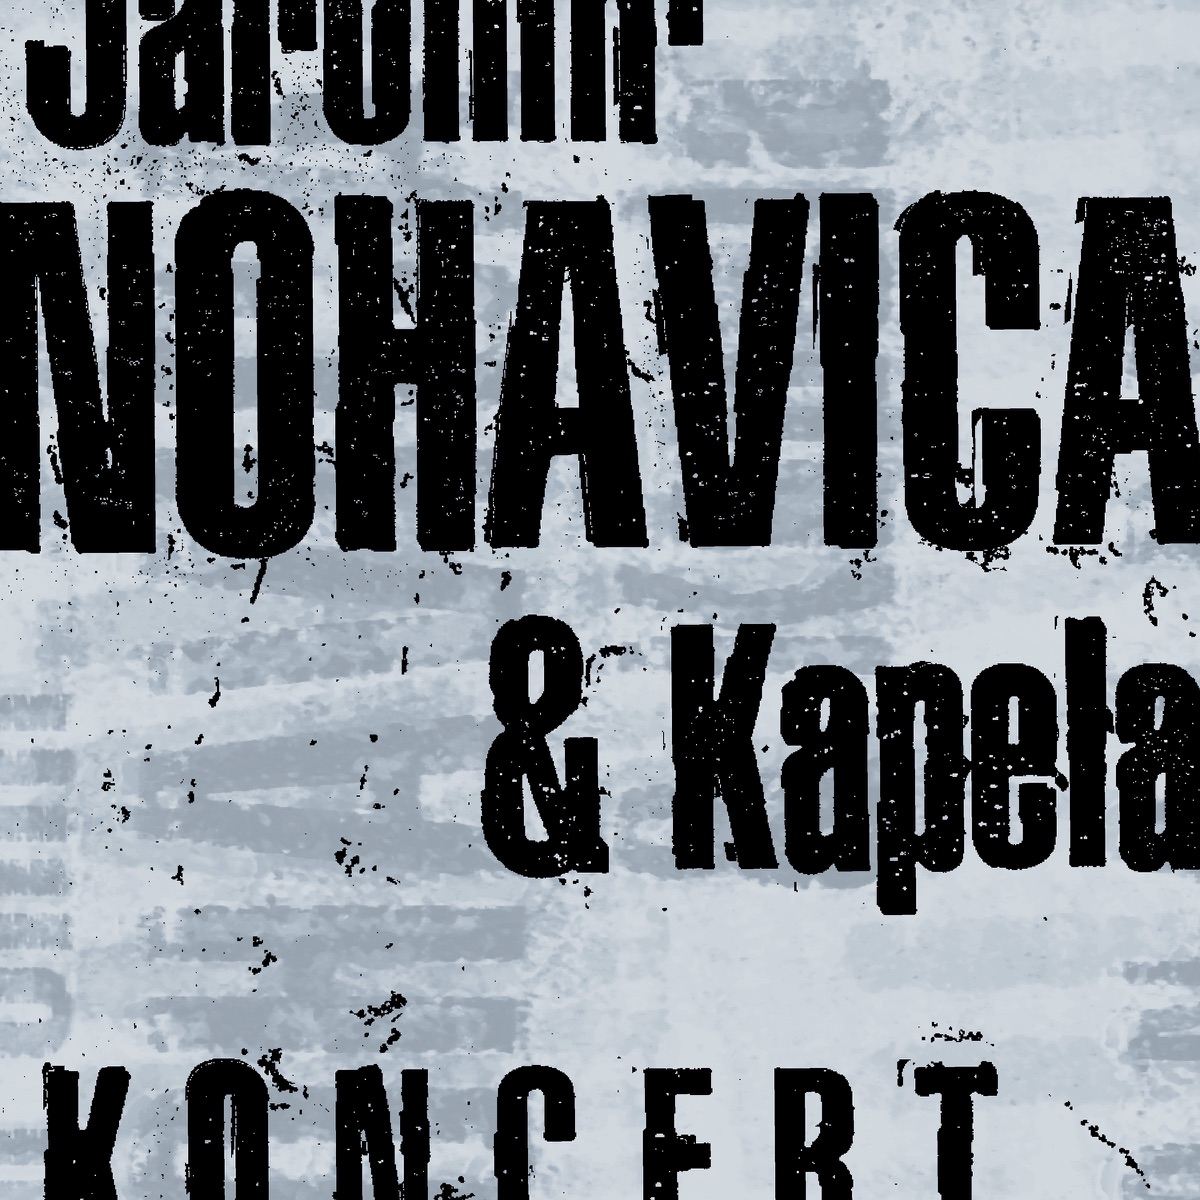 V Lucerně (Live) - Album by Jaromír Nohavica - Apple Music